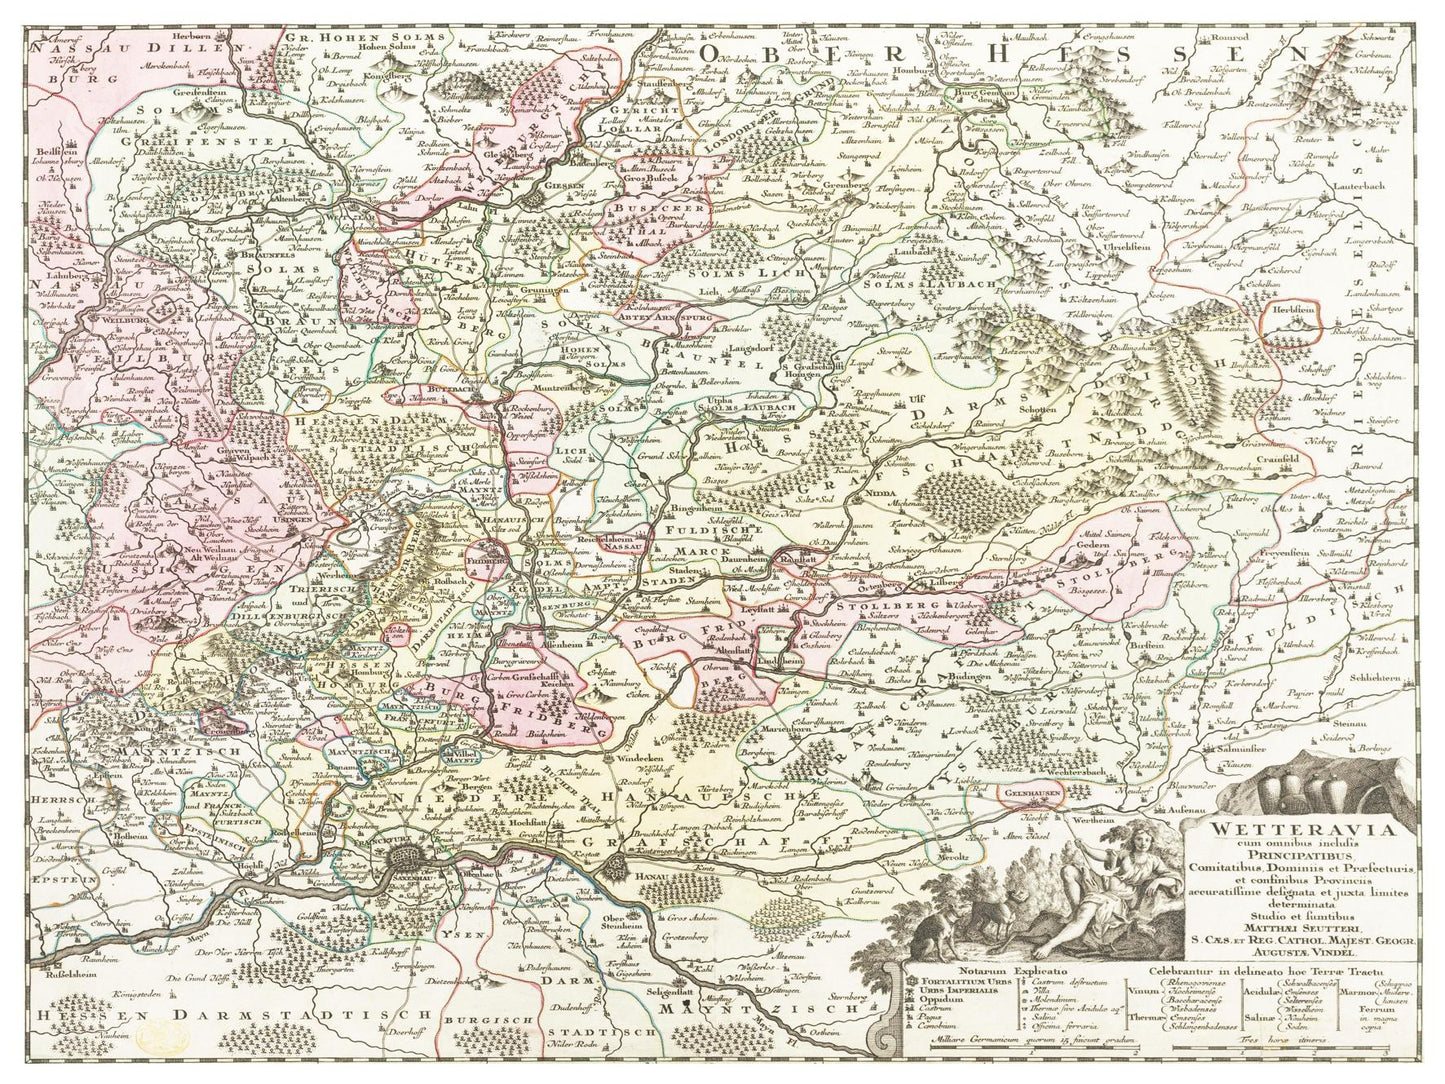 Historische Landkarte Wetterau um 1750